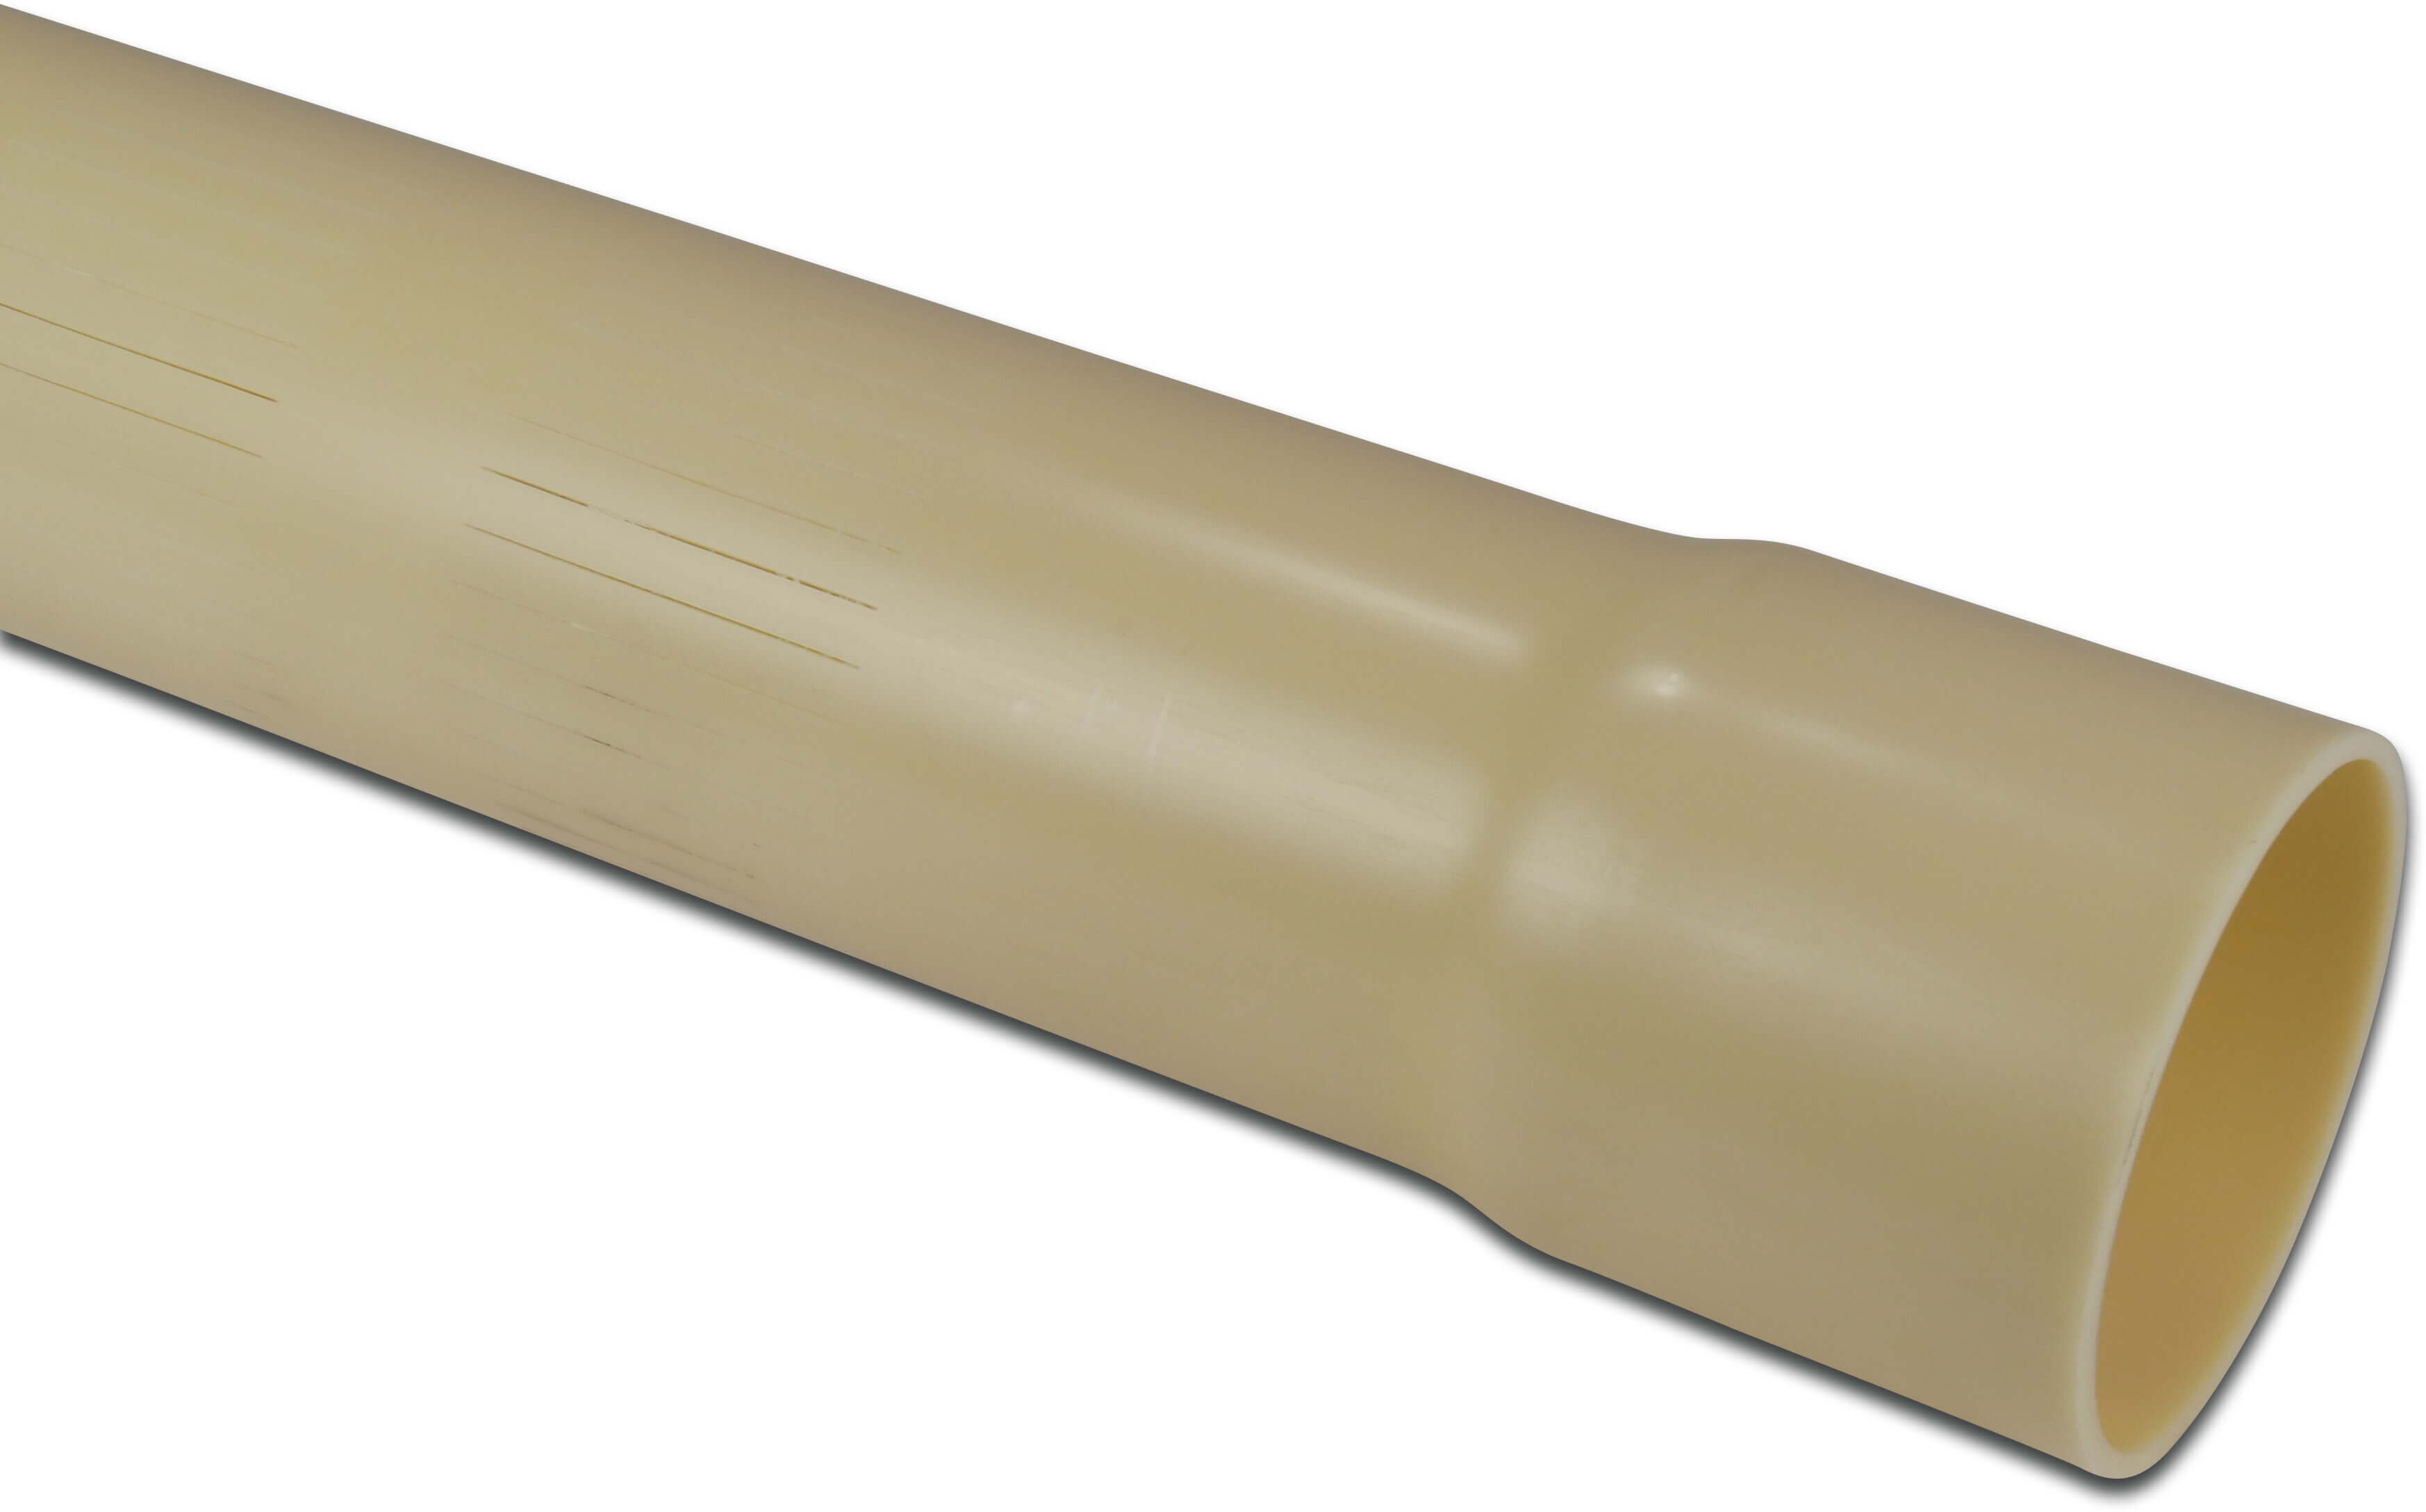 Rura szczelinowa PVC-U 63 mm x 2,5 mm KW x gładkie 2m 0,3 mm ISO-PN8 kremowy 5m